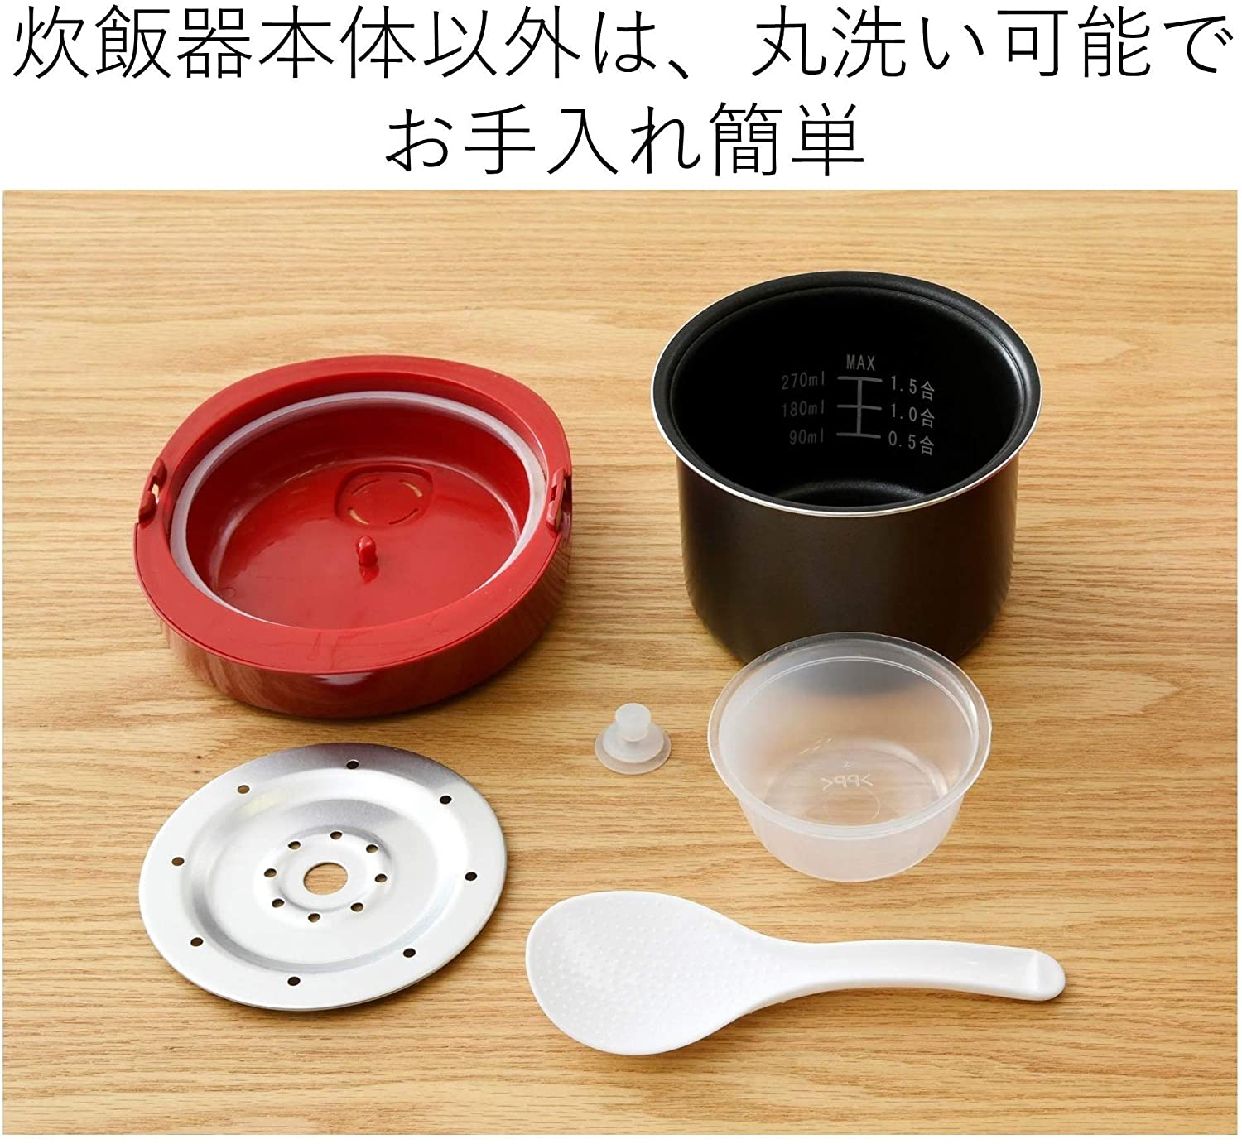 山善(YAMAZEN) マイコン炊飯器 YJG-M150の商品画像5 